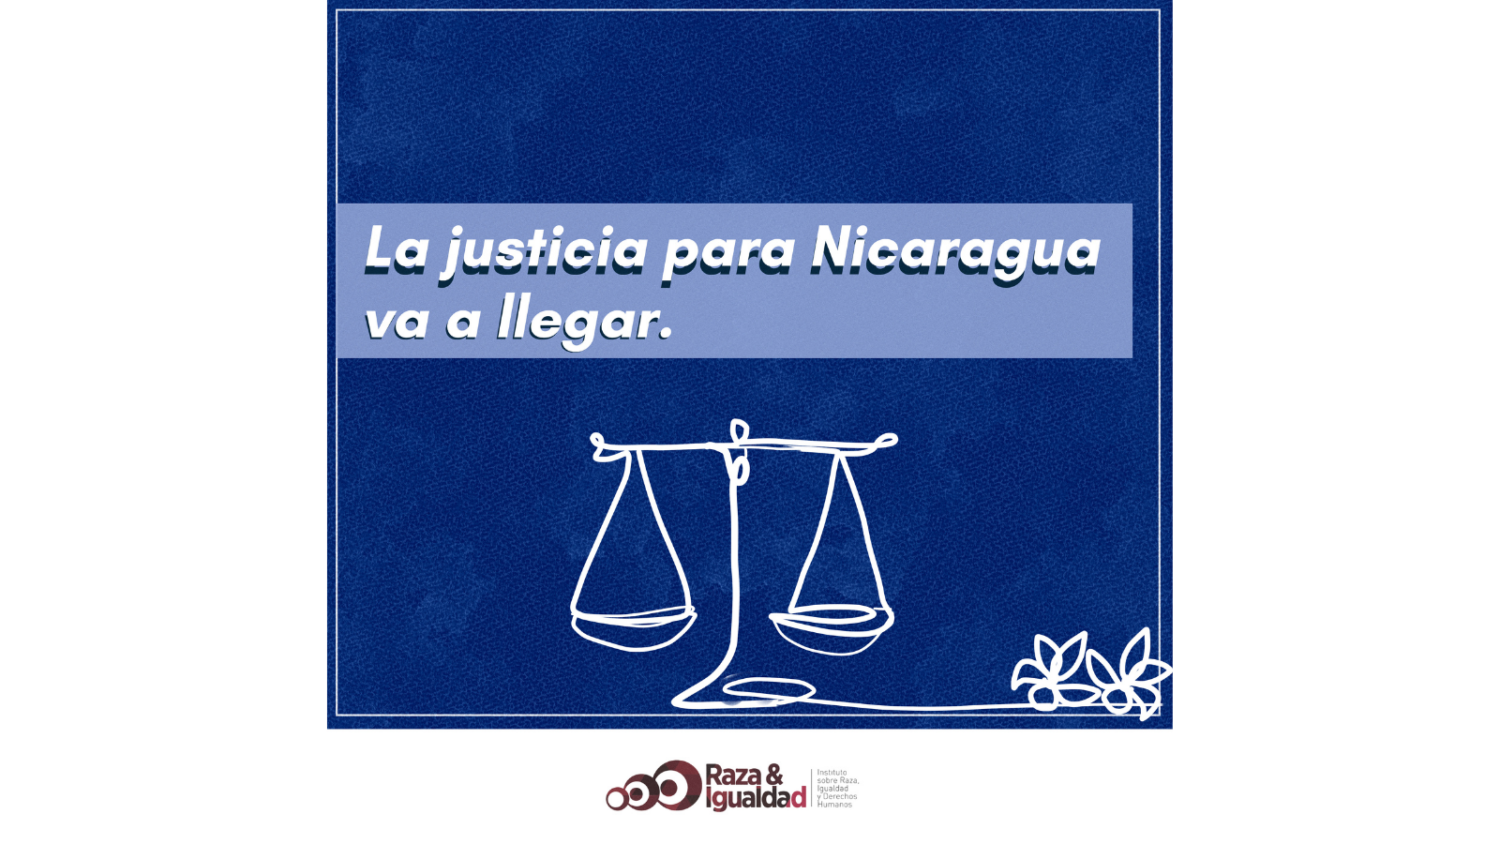 “La justicia para Nicaragua va a llegar”